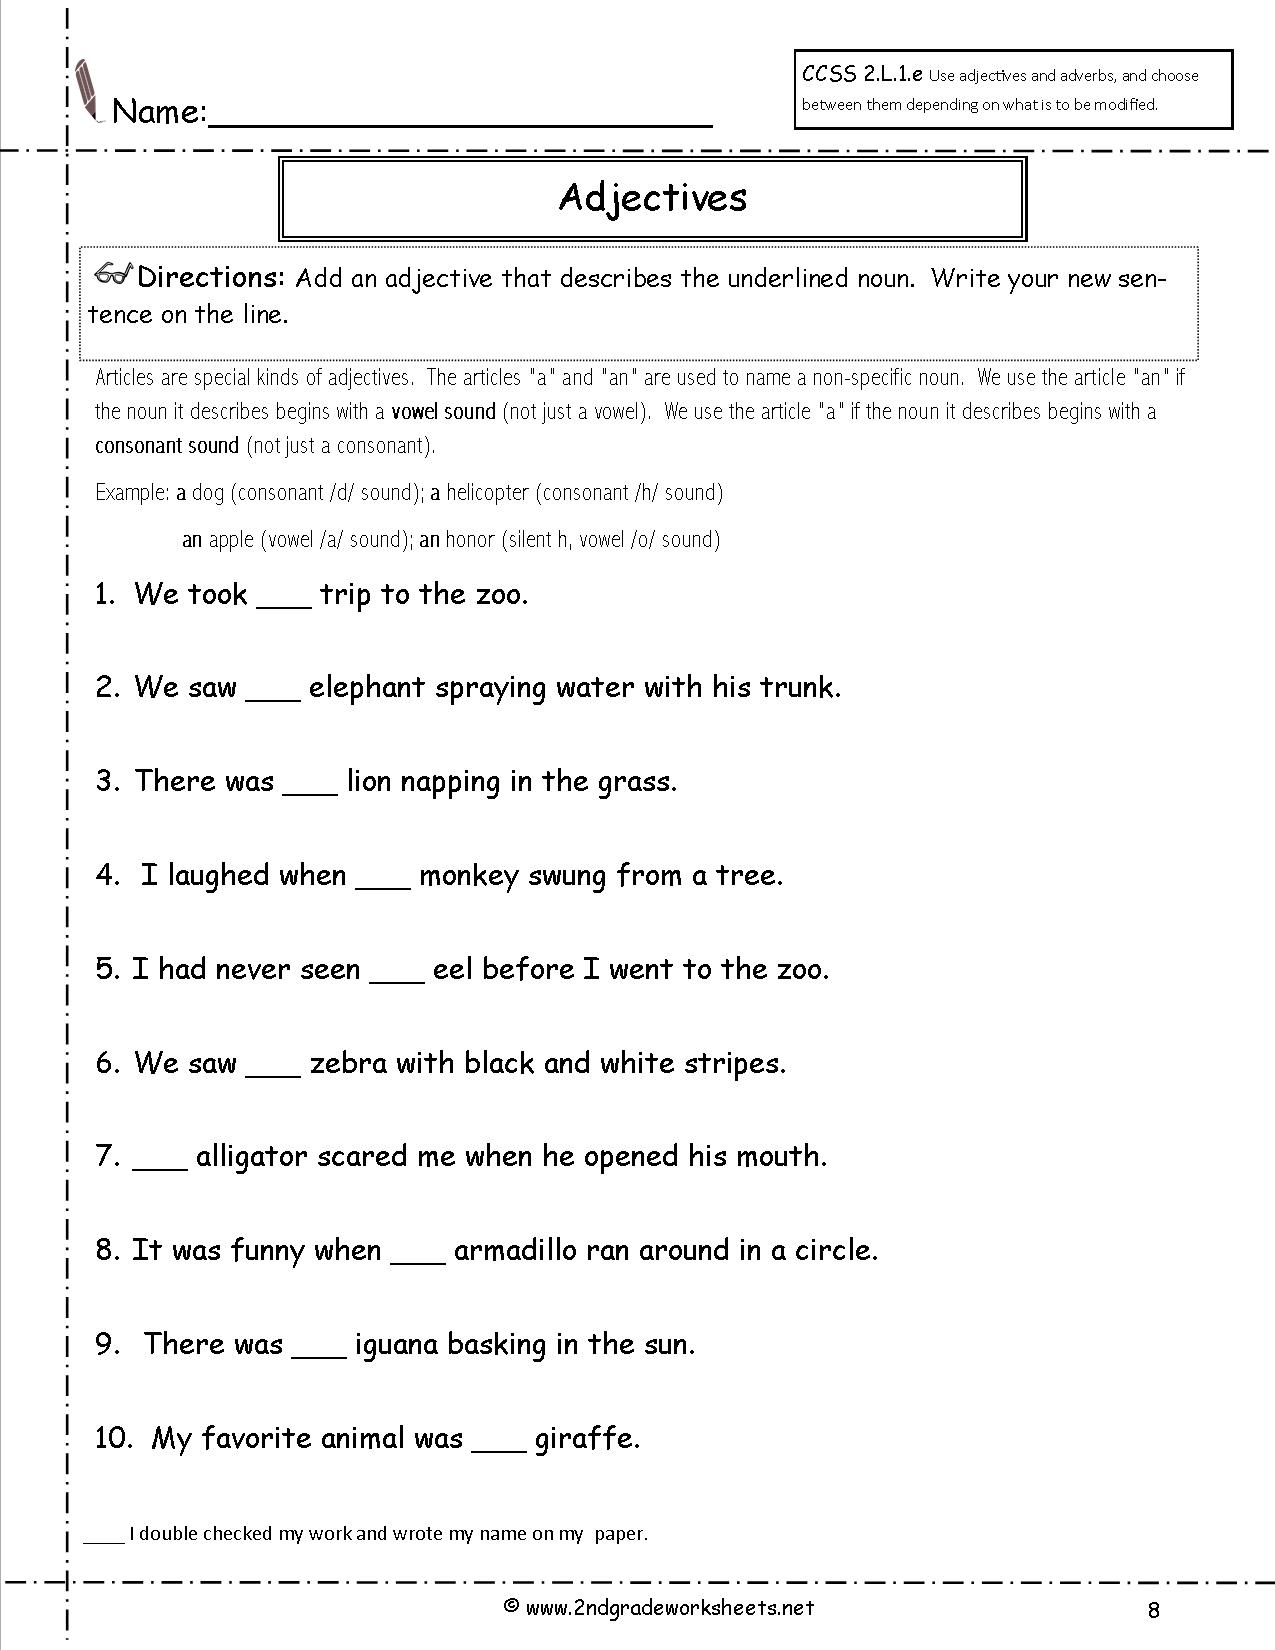 adjectives worksheet pdf grade 6